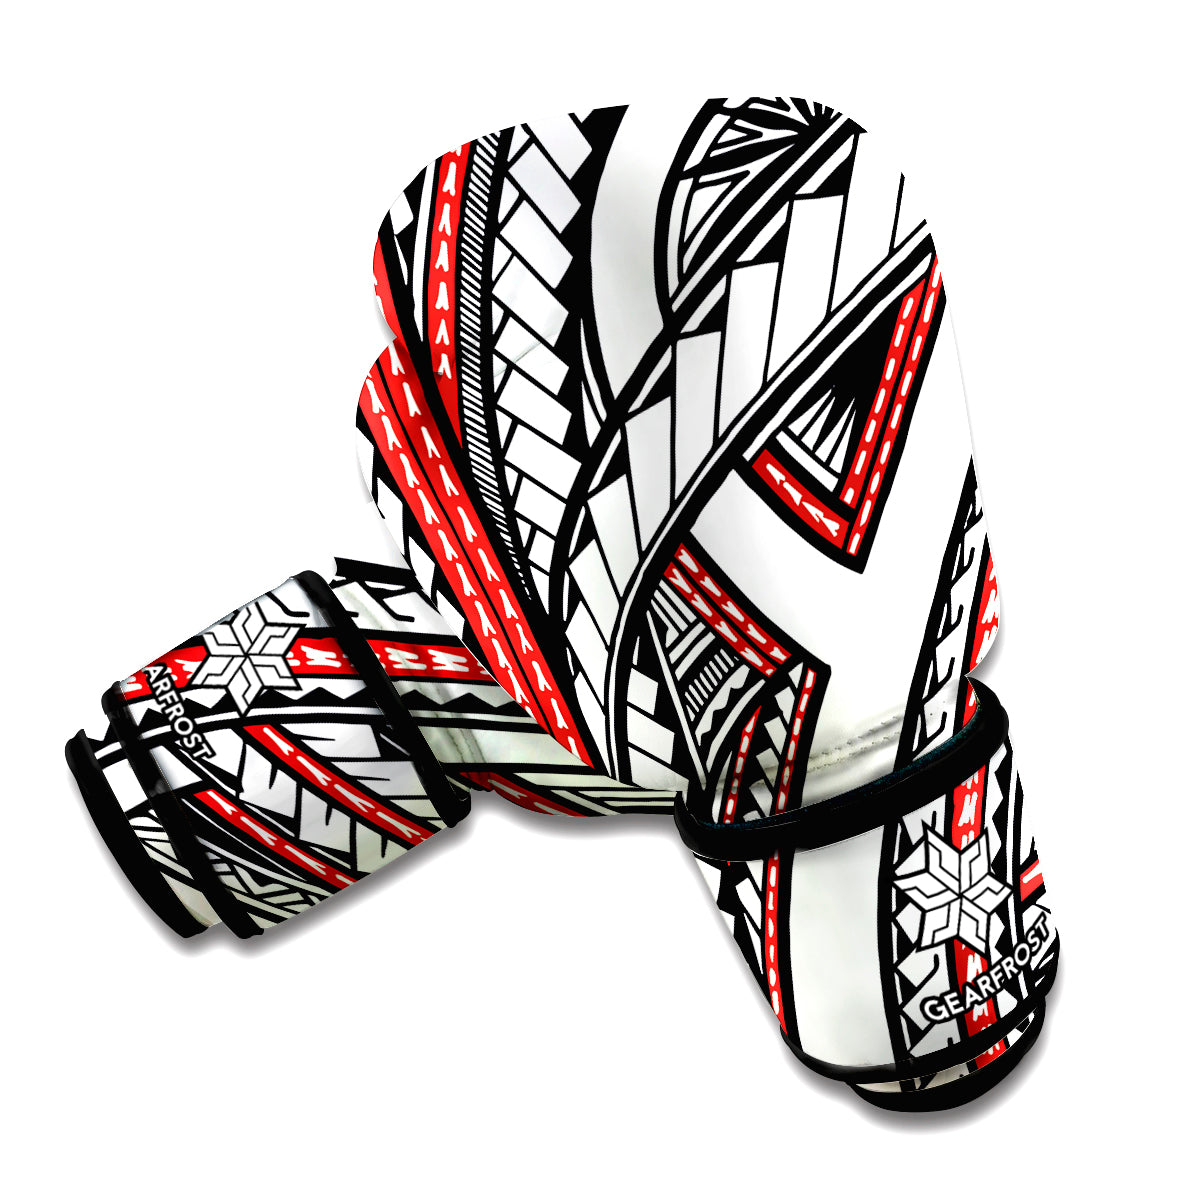 Tribal Fijian Tattoo Print Boxing Gloves